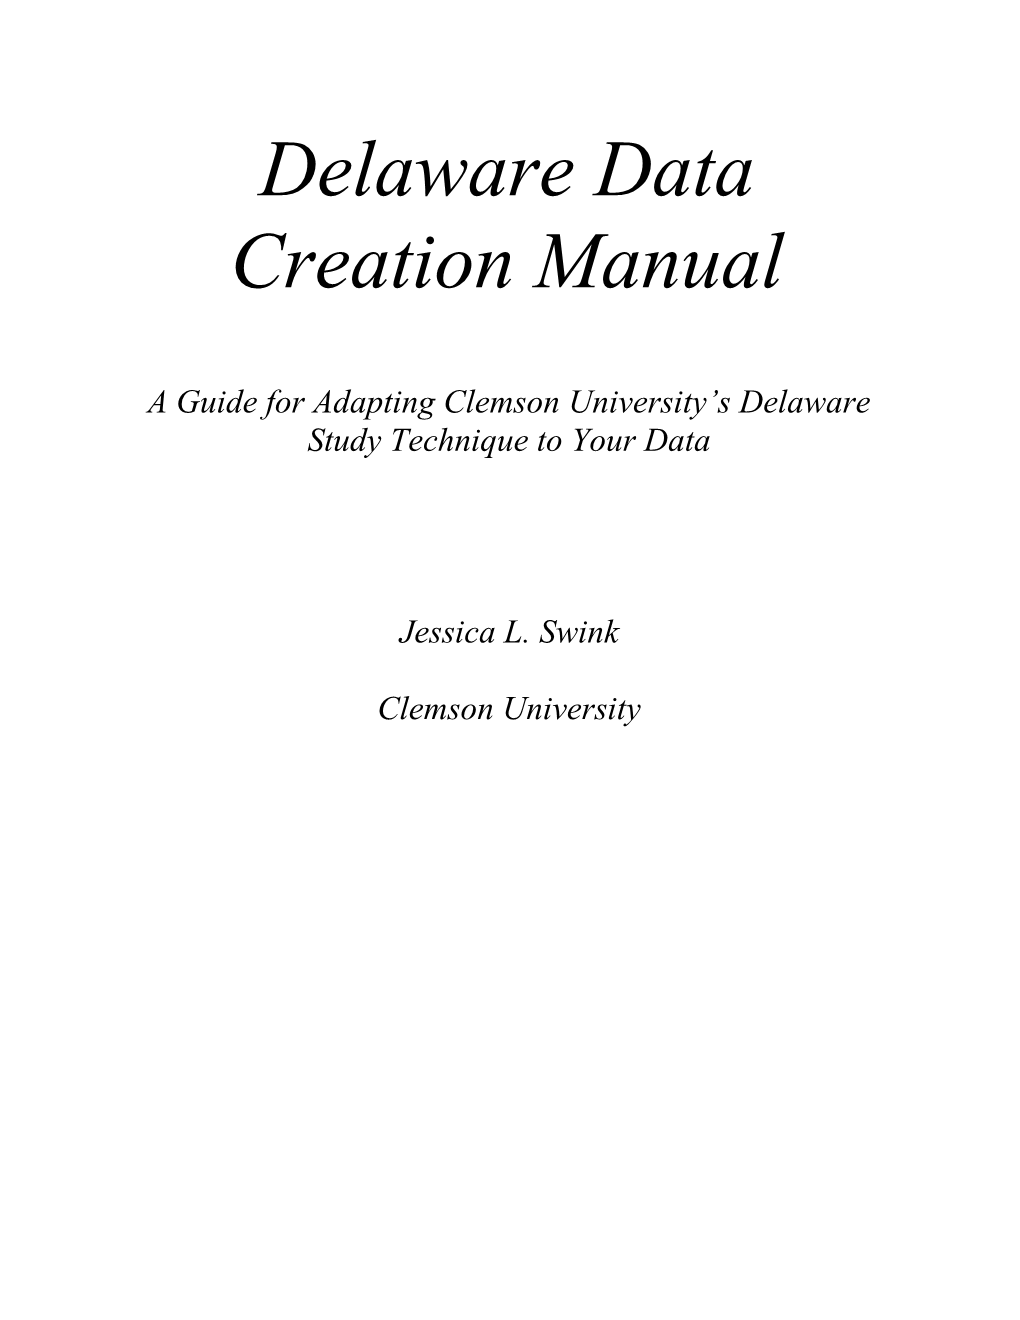 Delaware Data Creation Manual